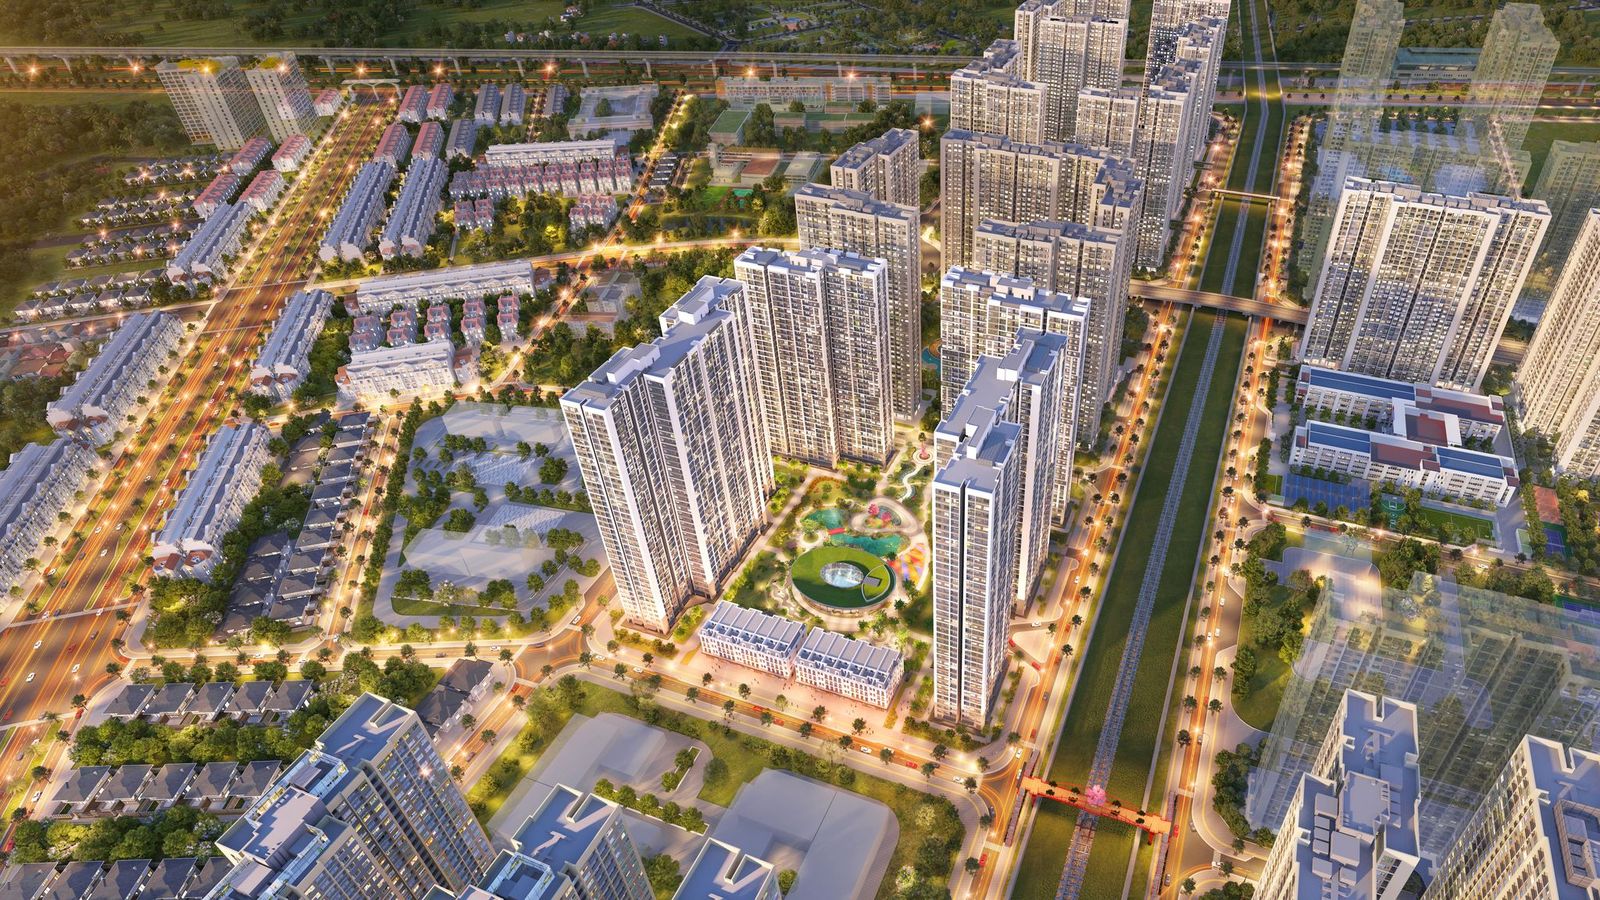 Các đại đô thị đáp ứng đầy đủ tiêu chuẩn sống đẳng cấp phía Tây Hà Nội như Vinhomes Smart City trở thành lựa chọn của nhiều cư dân quốc tế khi sang Hà Nội sinh sống và làm việc.